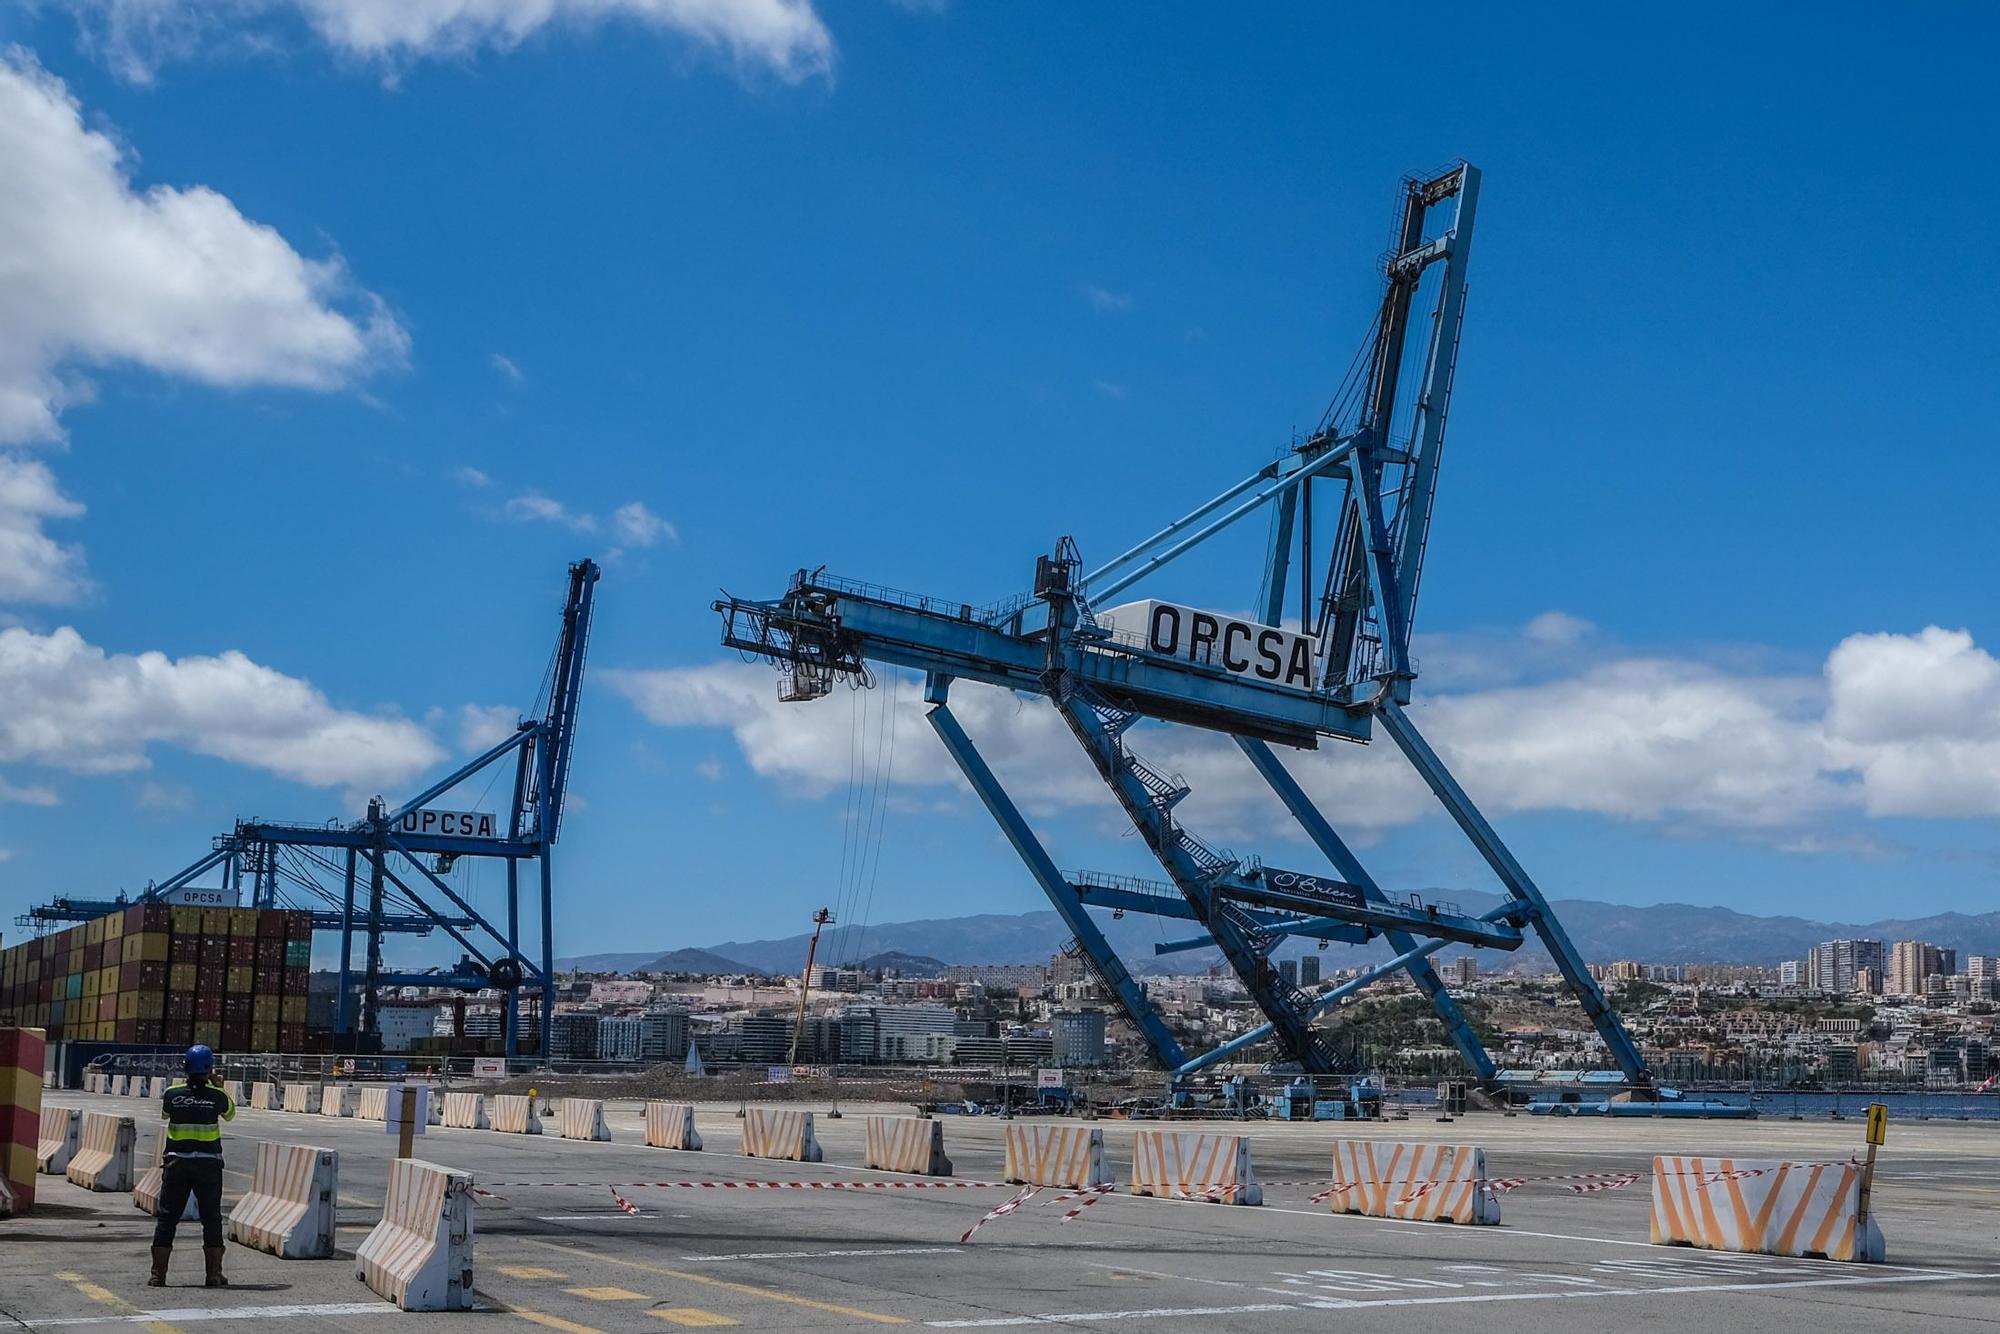 Desmontaje Grúa OPCSA en Puerto de Las Palmas